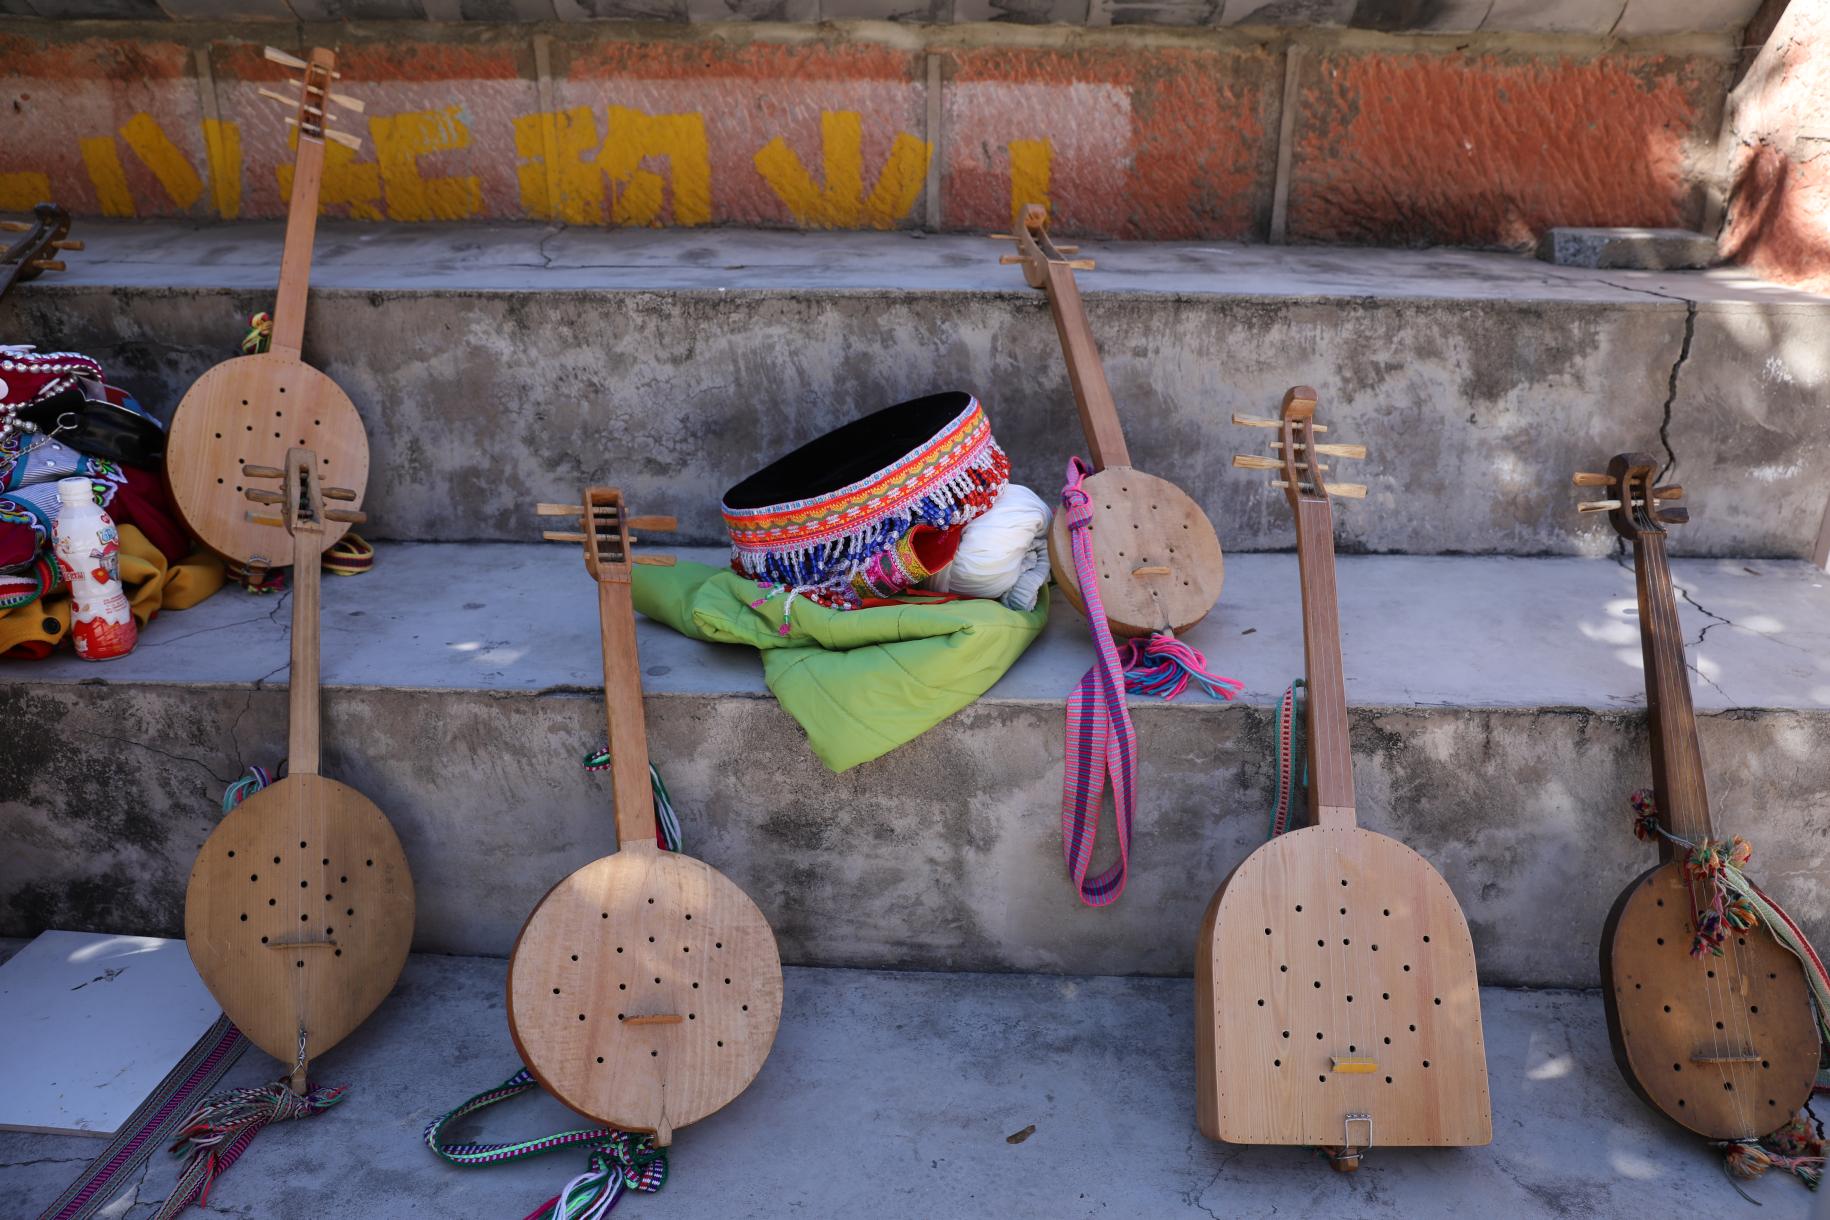 آلة ليسو الموسيقية التقليدية كيبان هي آلة وترية قديمة أشير إليها في الفلكلور.